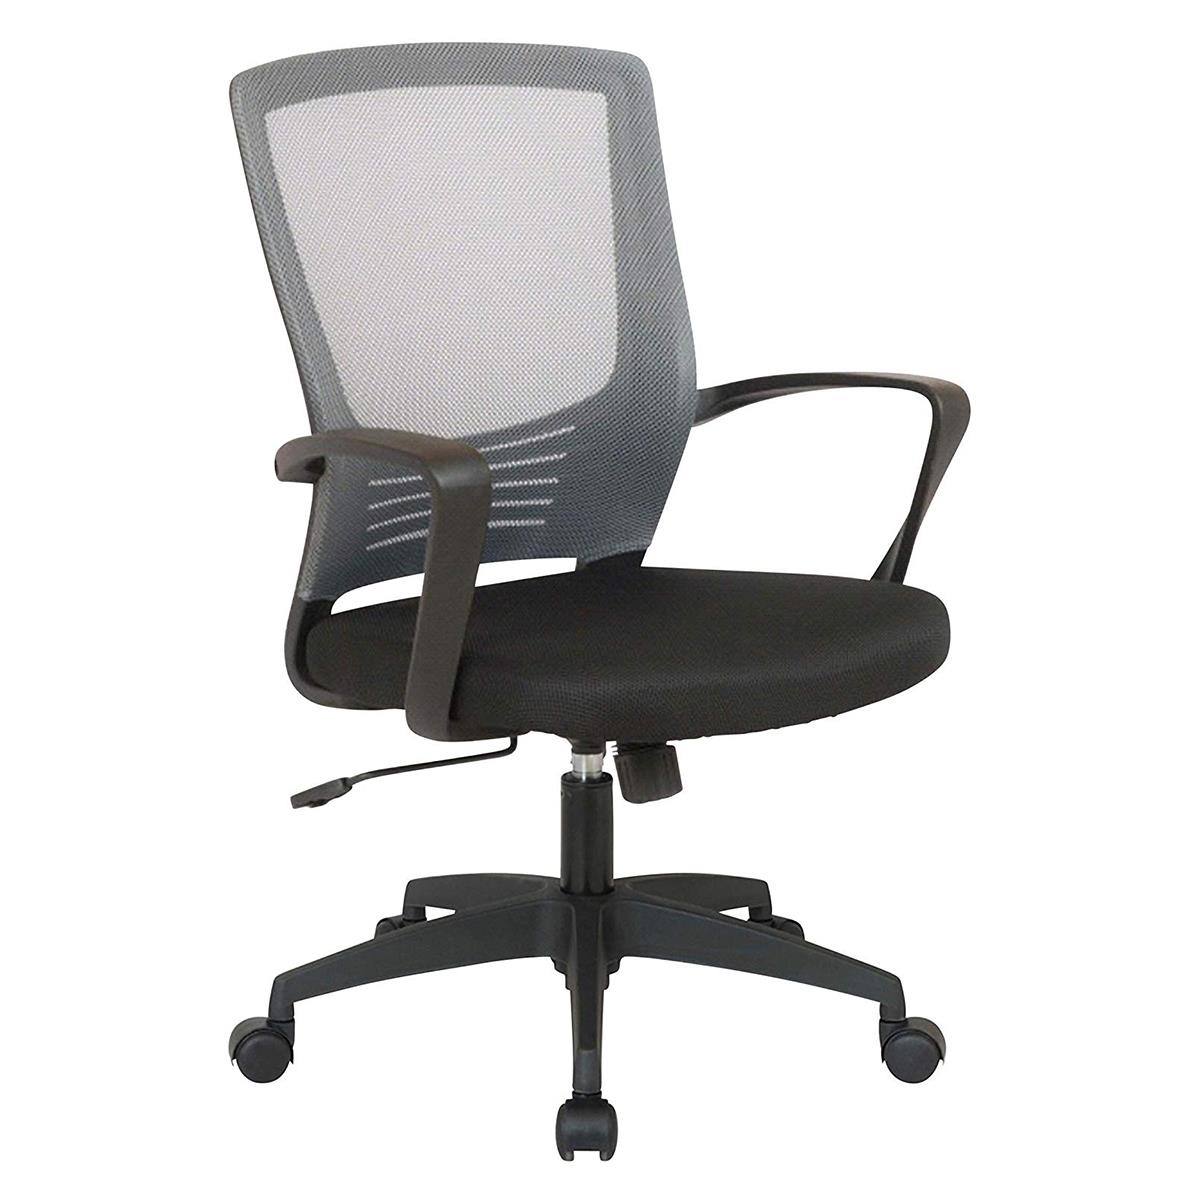 Chaise de Bureau MALIBU, Design moderne et Ergonomique, Maille Respirable, Gris